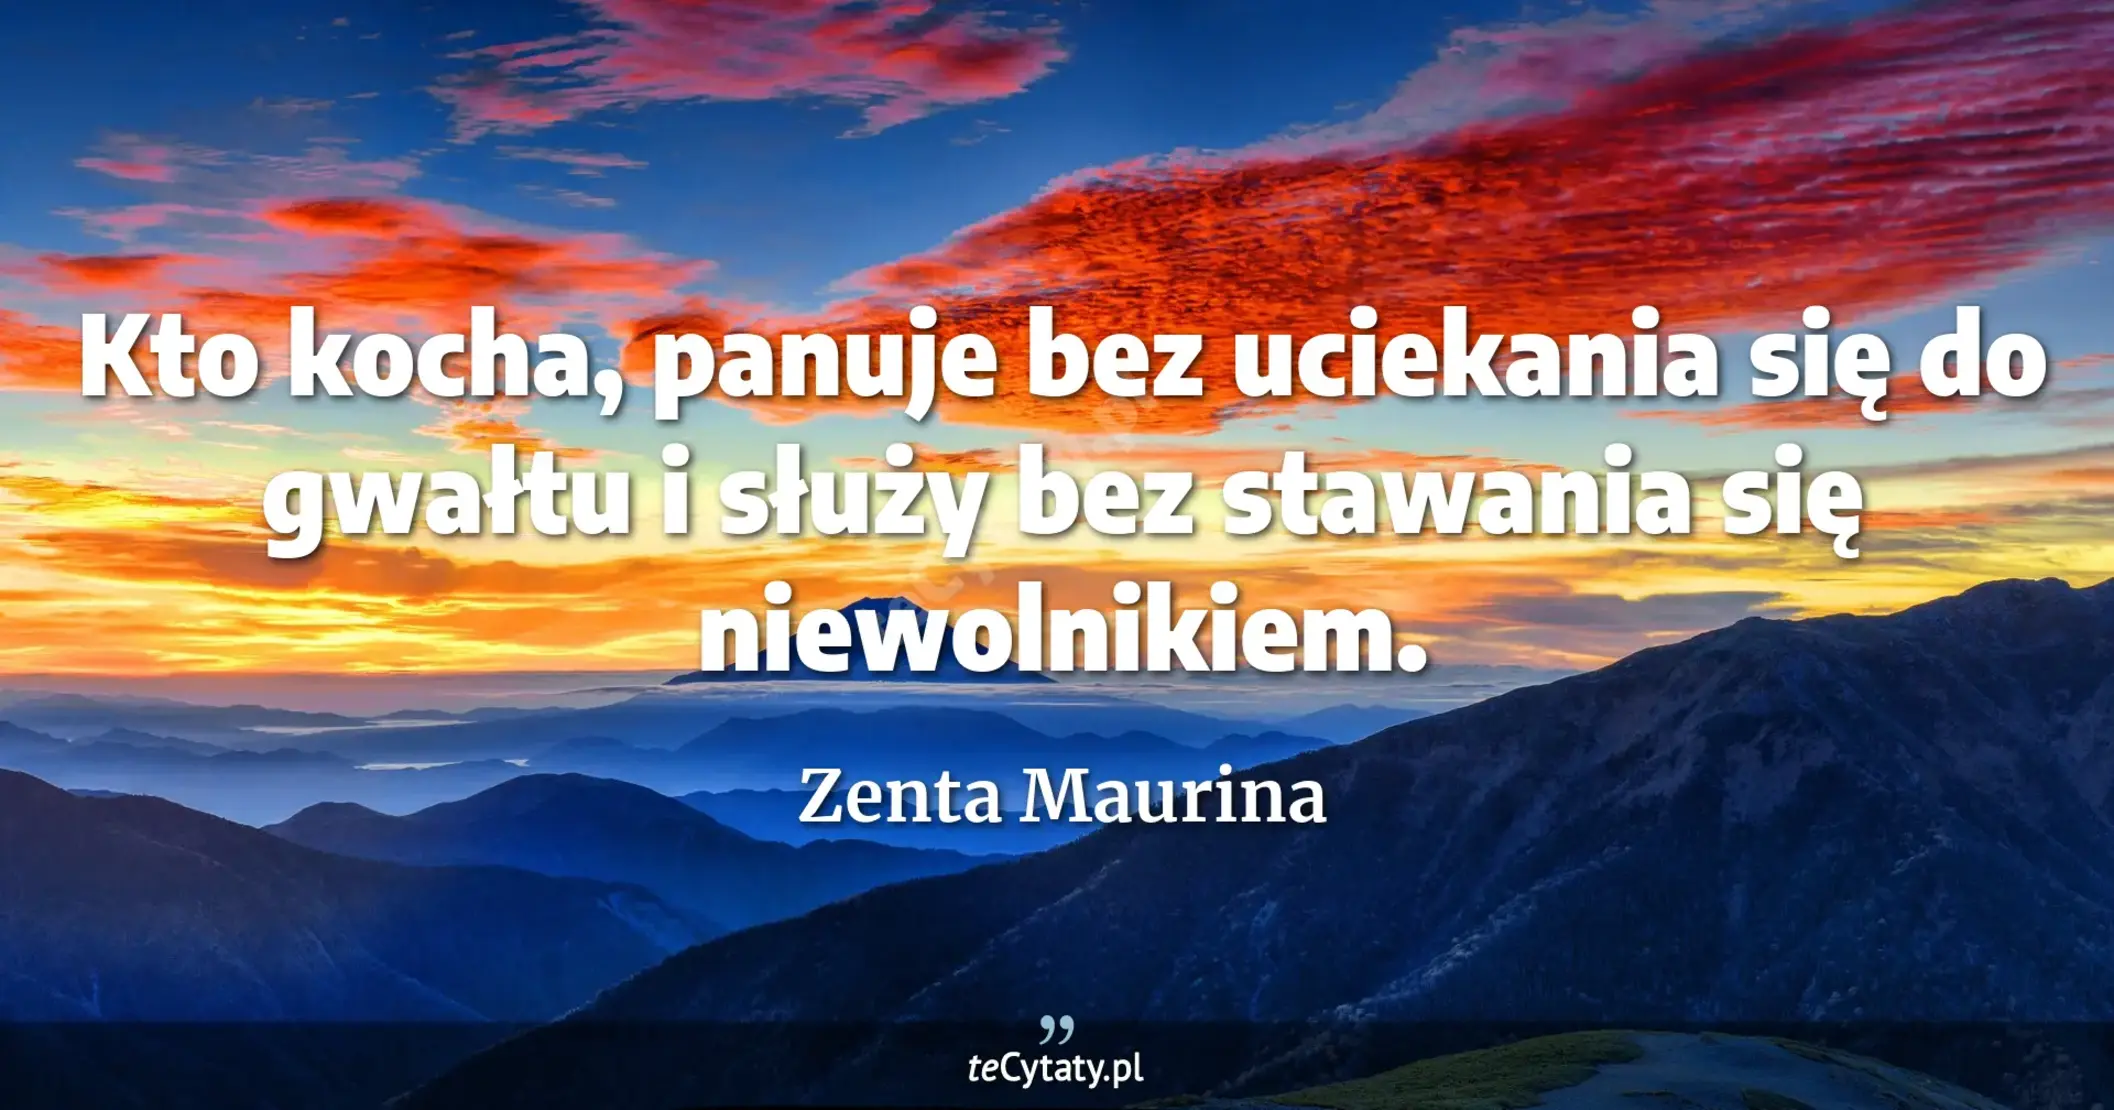 Kto kocha, panuje bez uciekania się do gwałtu i służy bez stawania się niewolnikiem. - Zenta Maurina